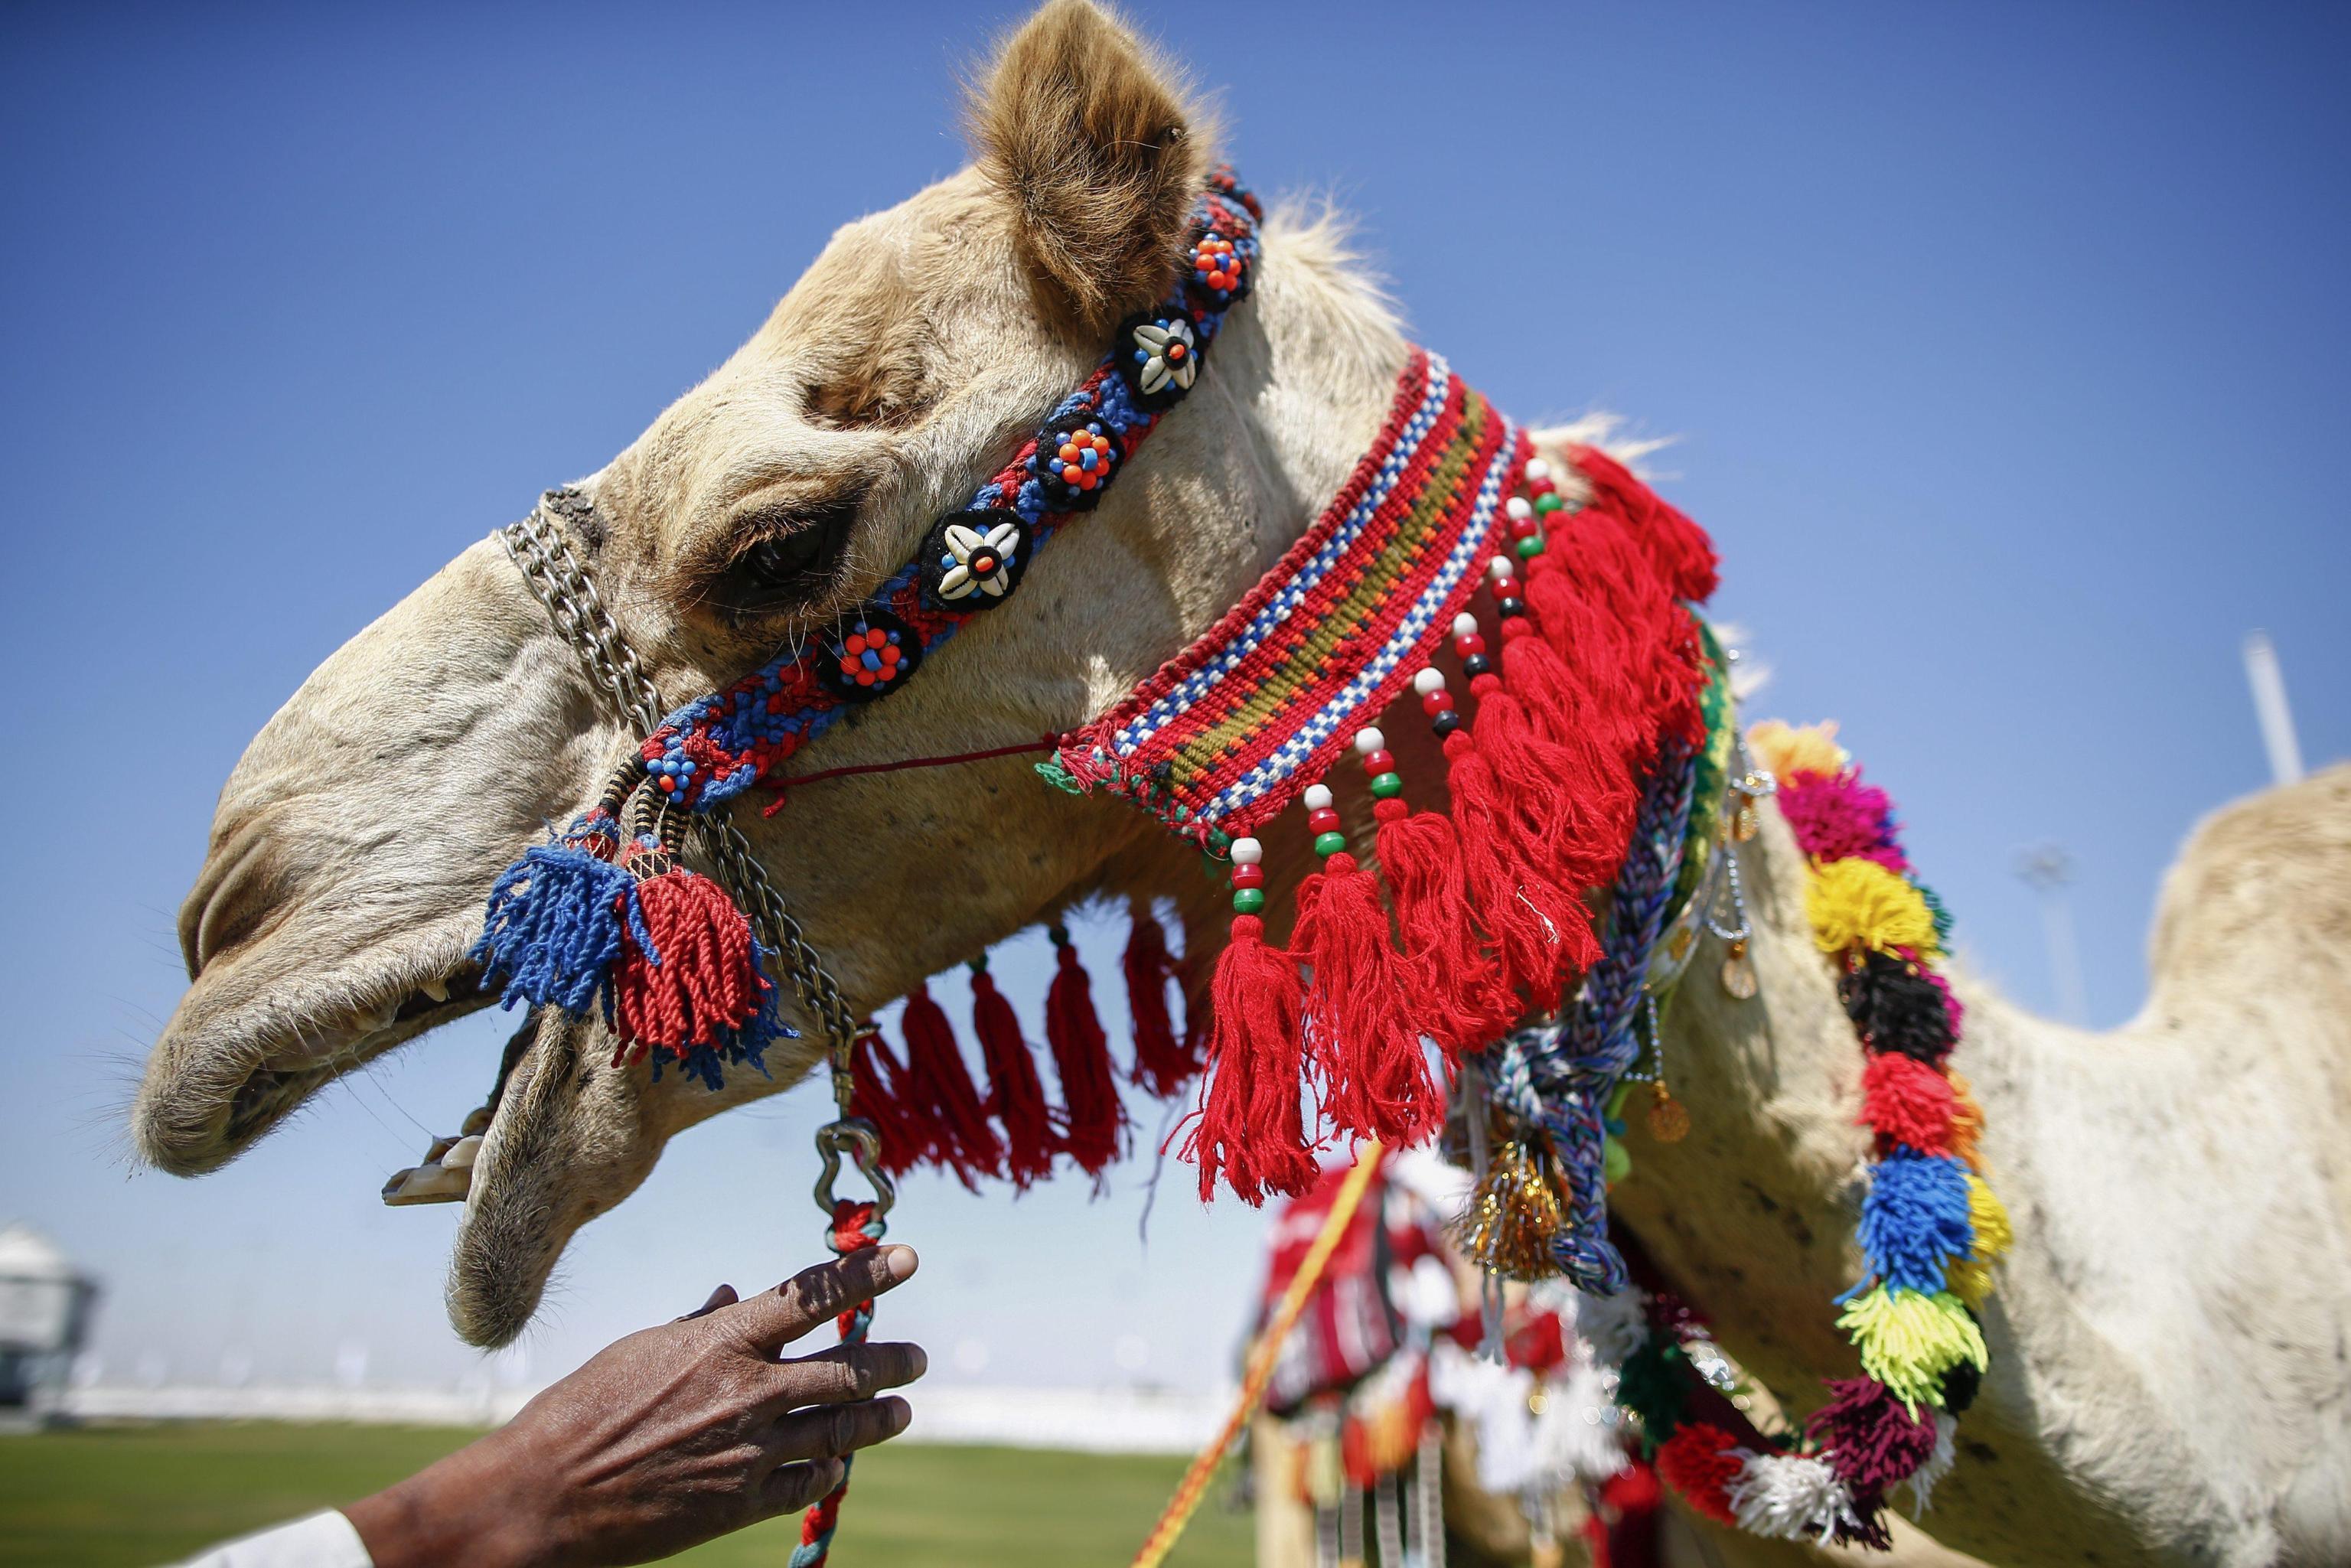 La corsa dei cammelli del Qatar - Photogallery - Rai News